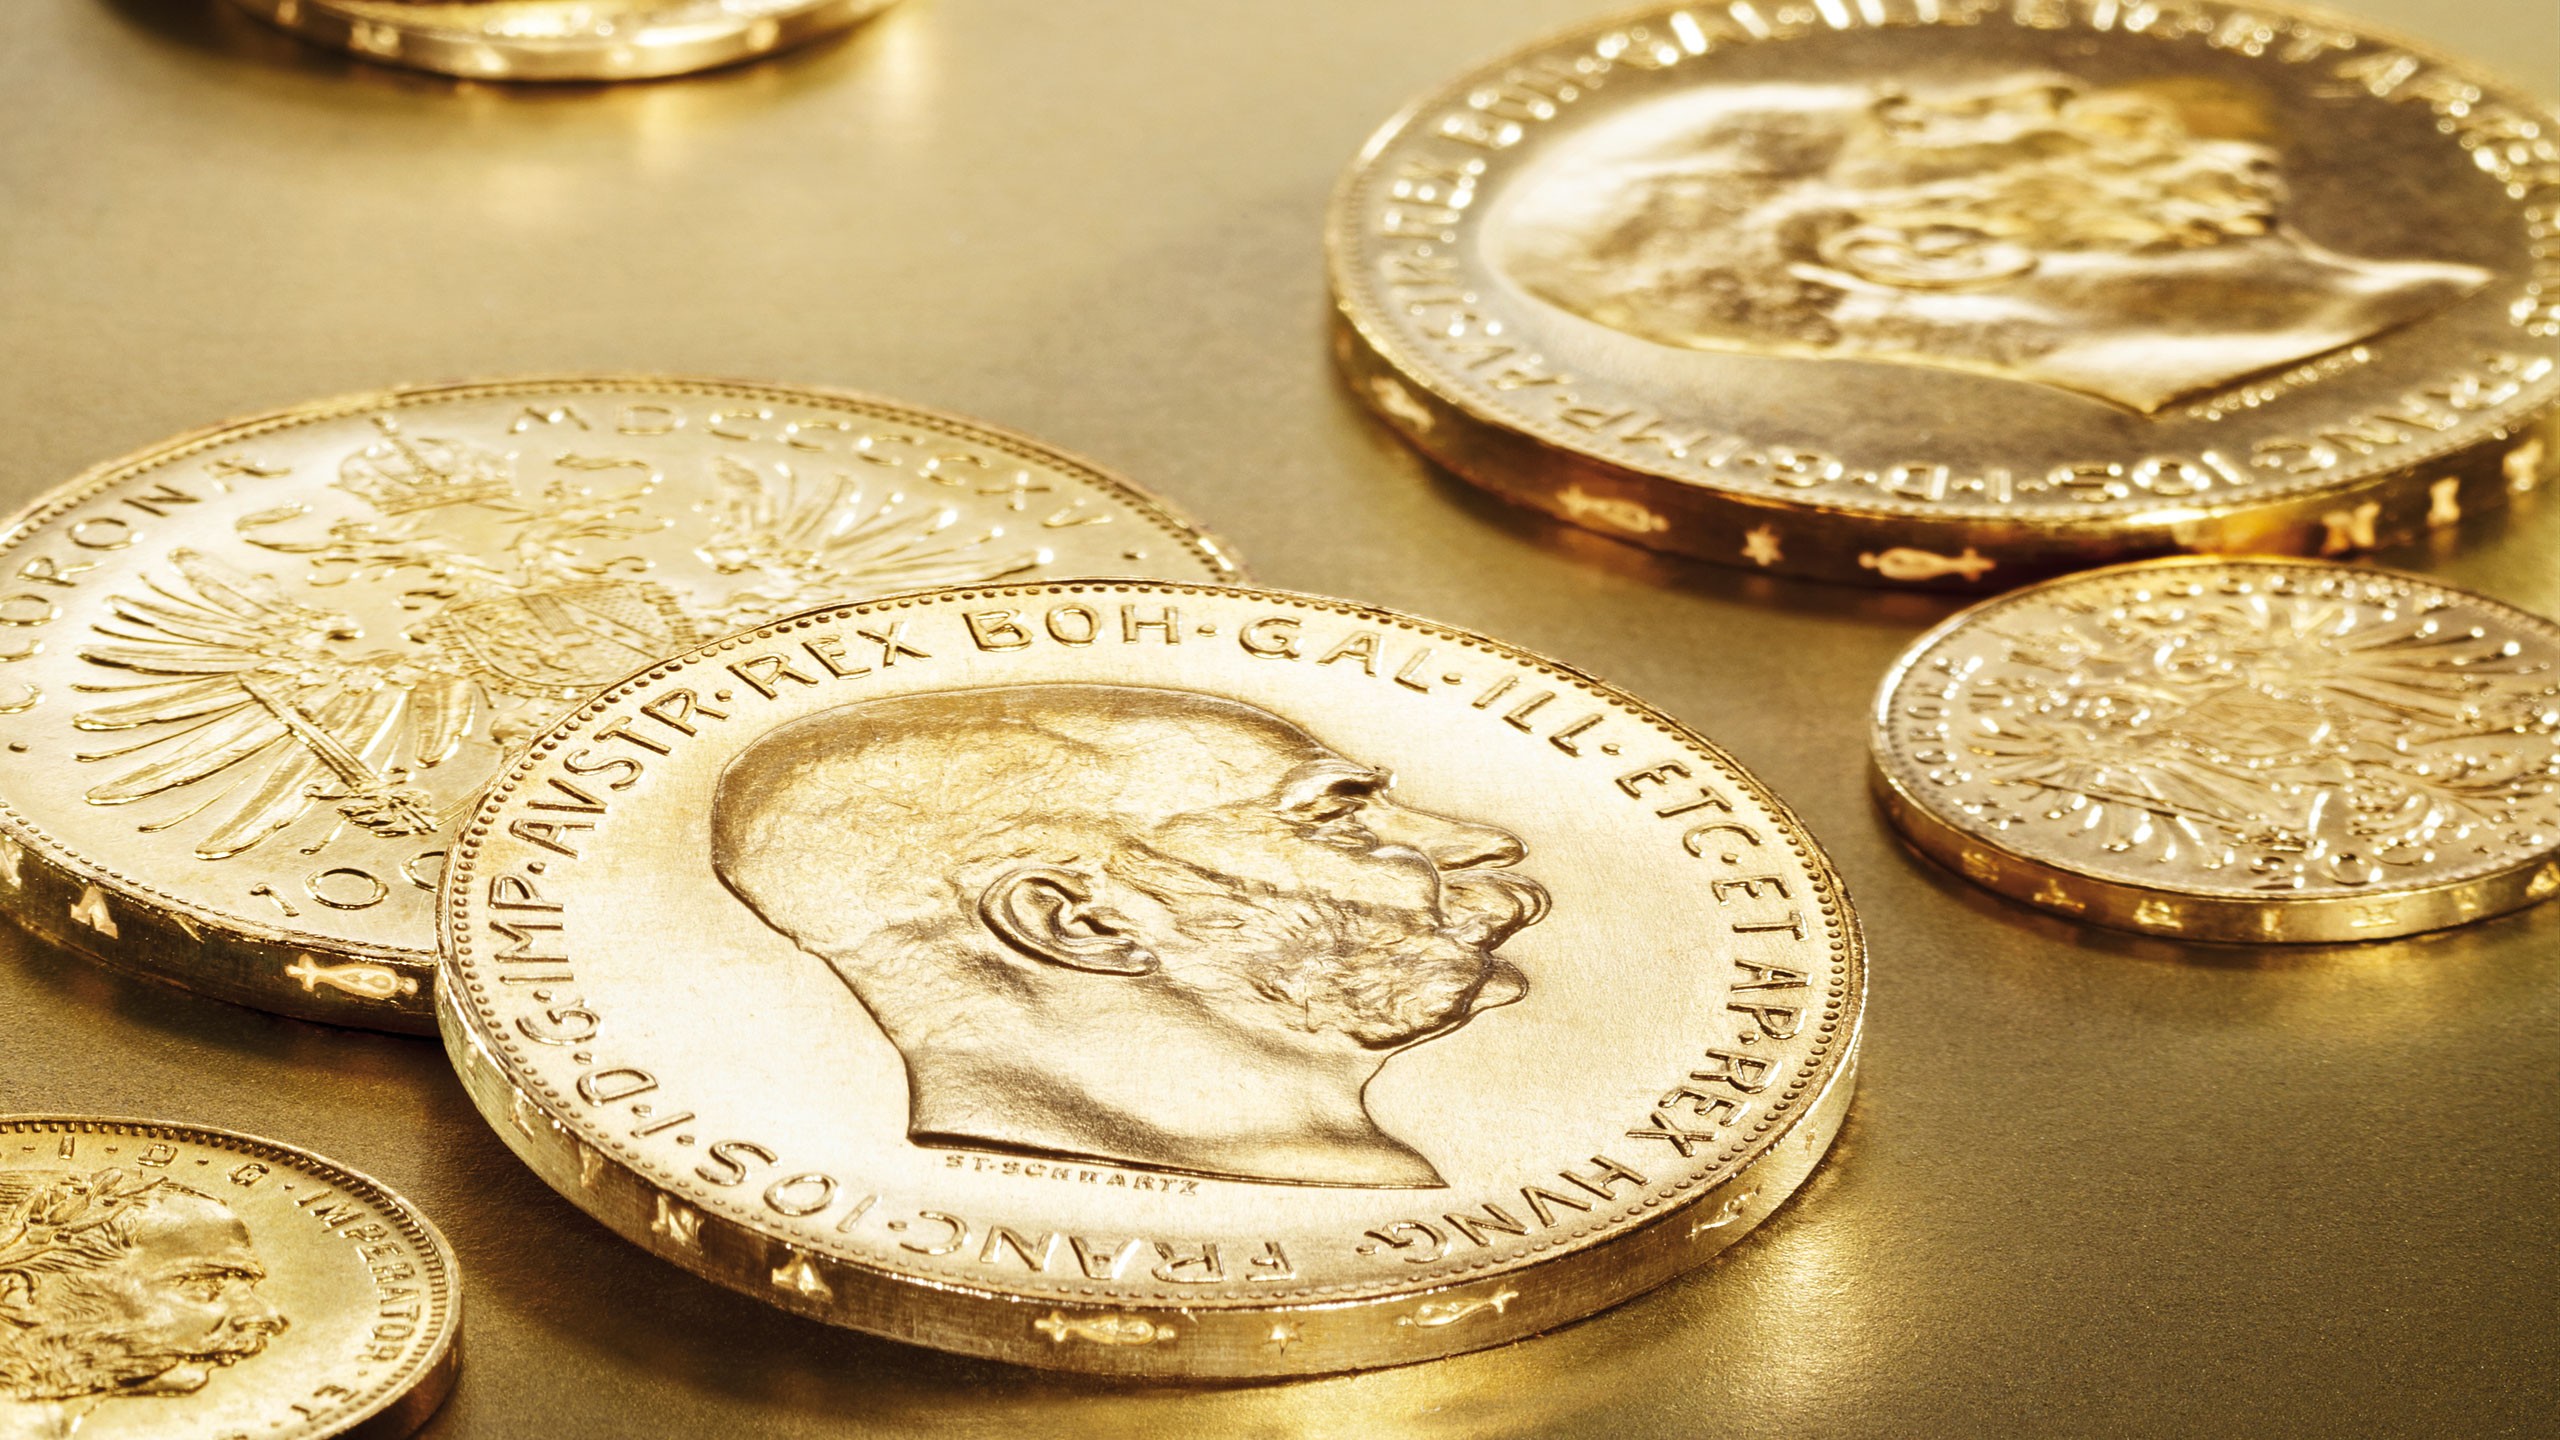 Anlagemünzen und Handelsgoldmünzen in Gold mehrere Münzen liegend